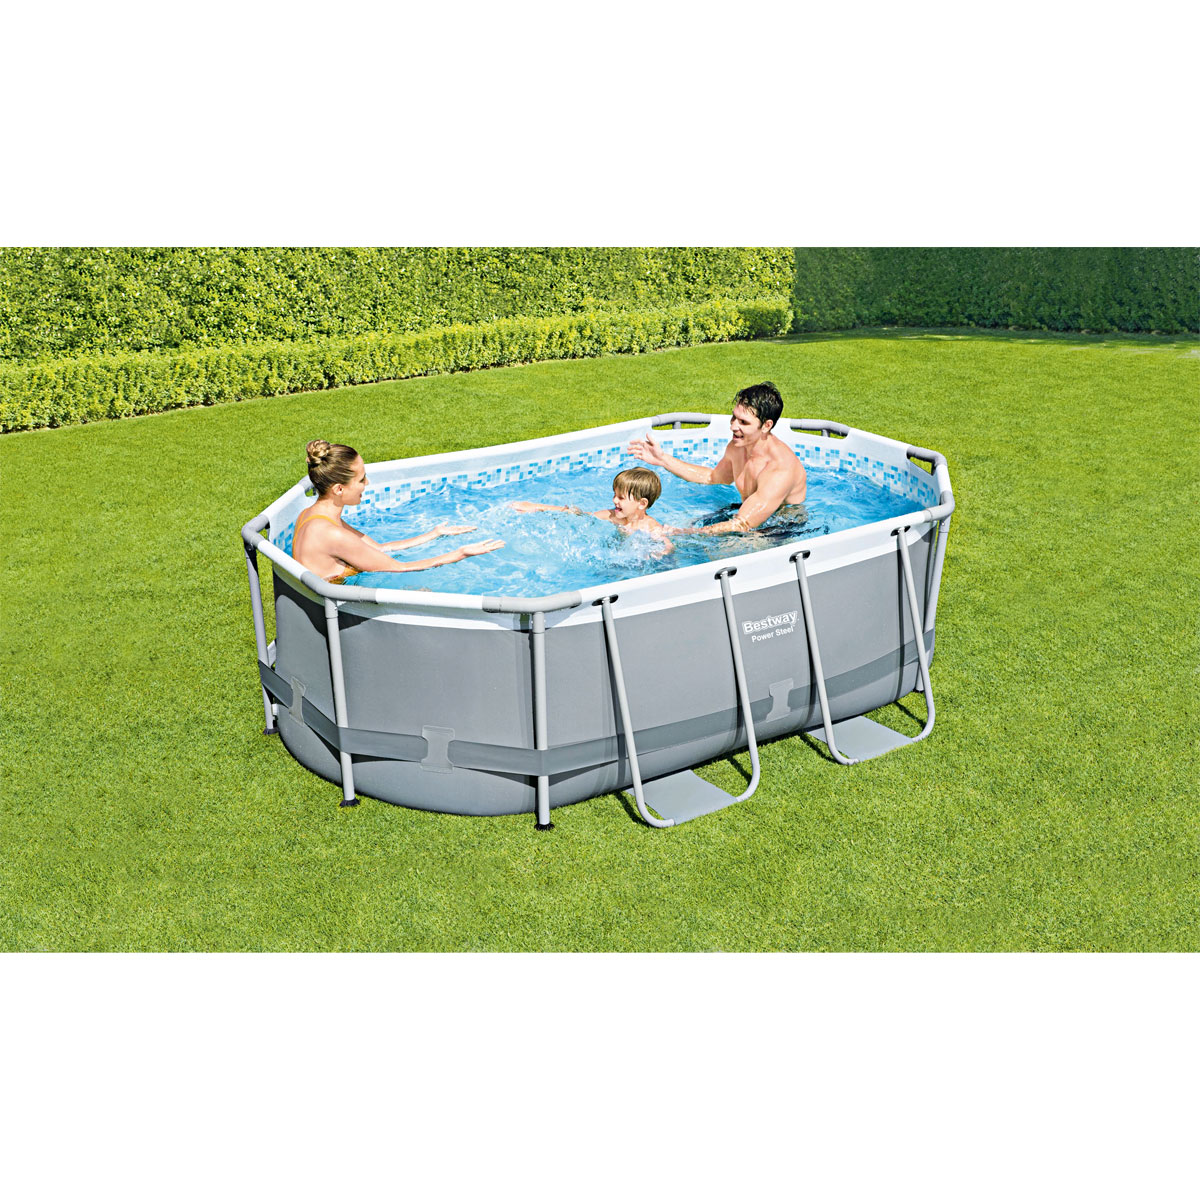 Power Steel Frame Pool komplett-Set mit Filterpumpe, 305x200x84 cm, grau, oval